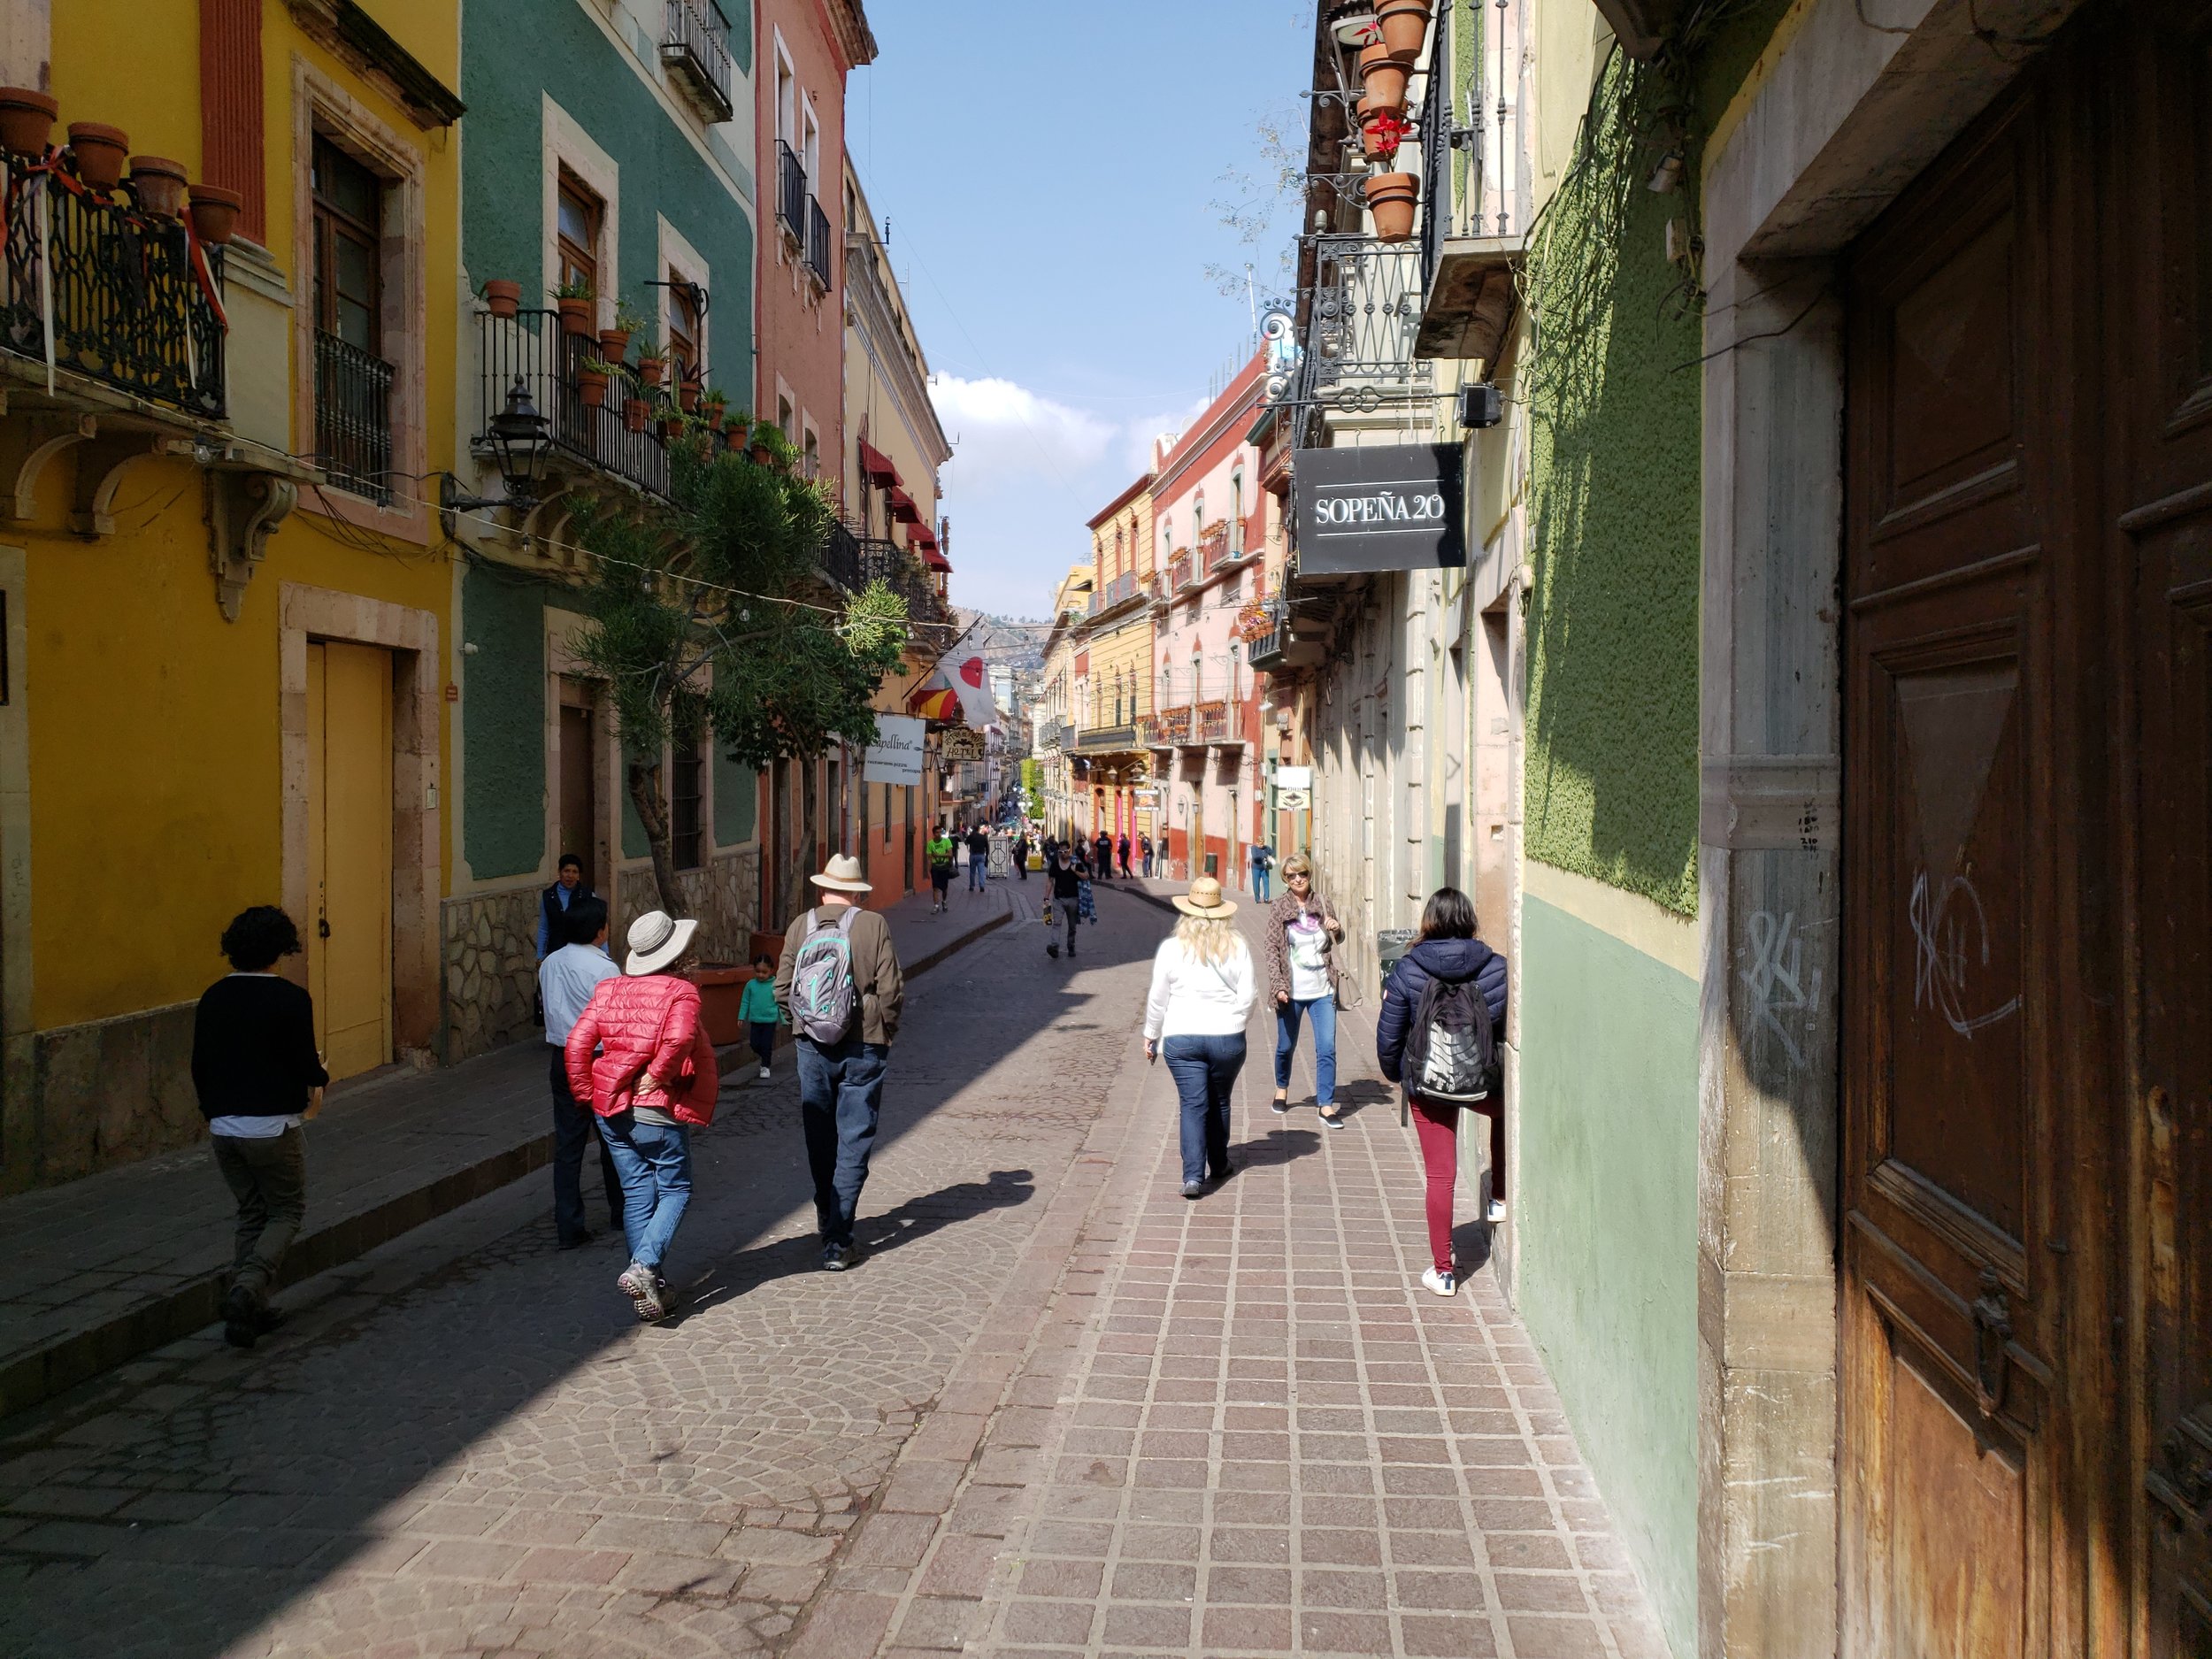 Street scene in Guanajuato